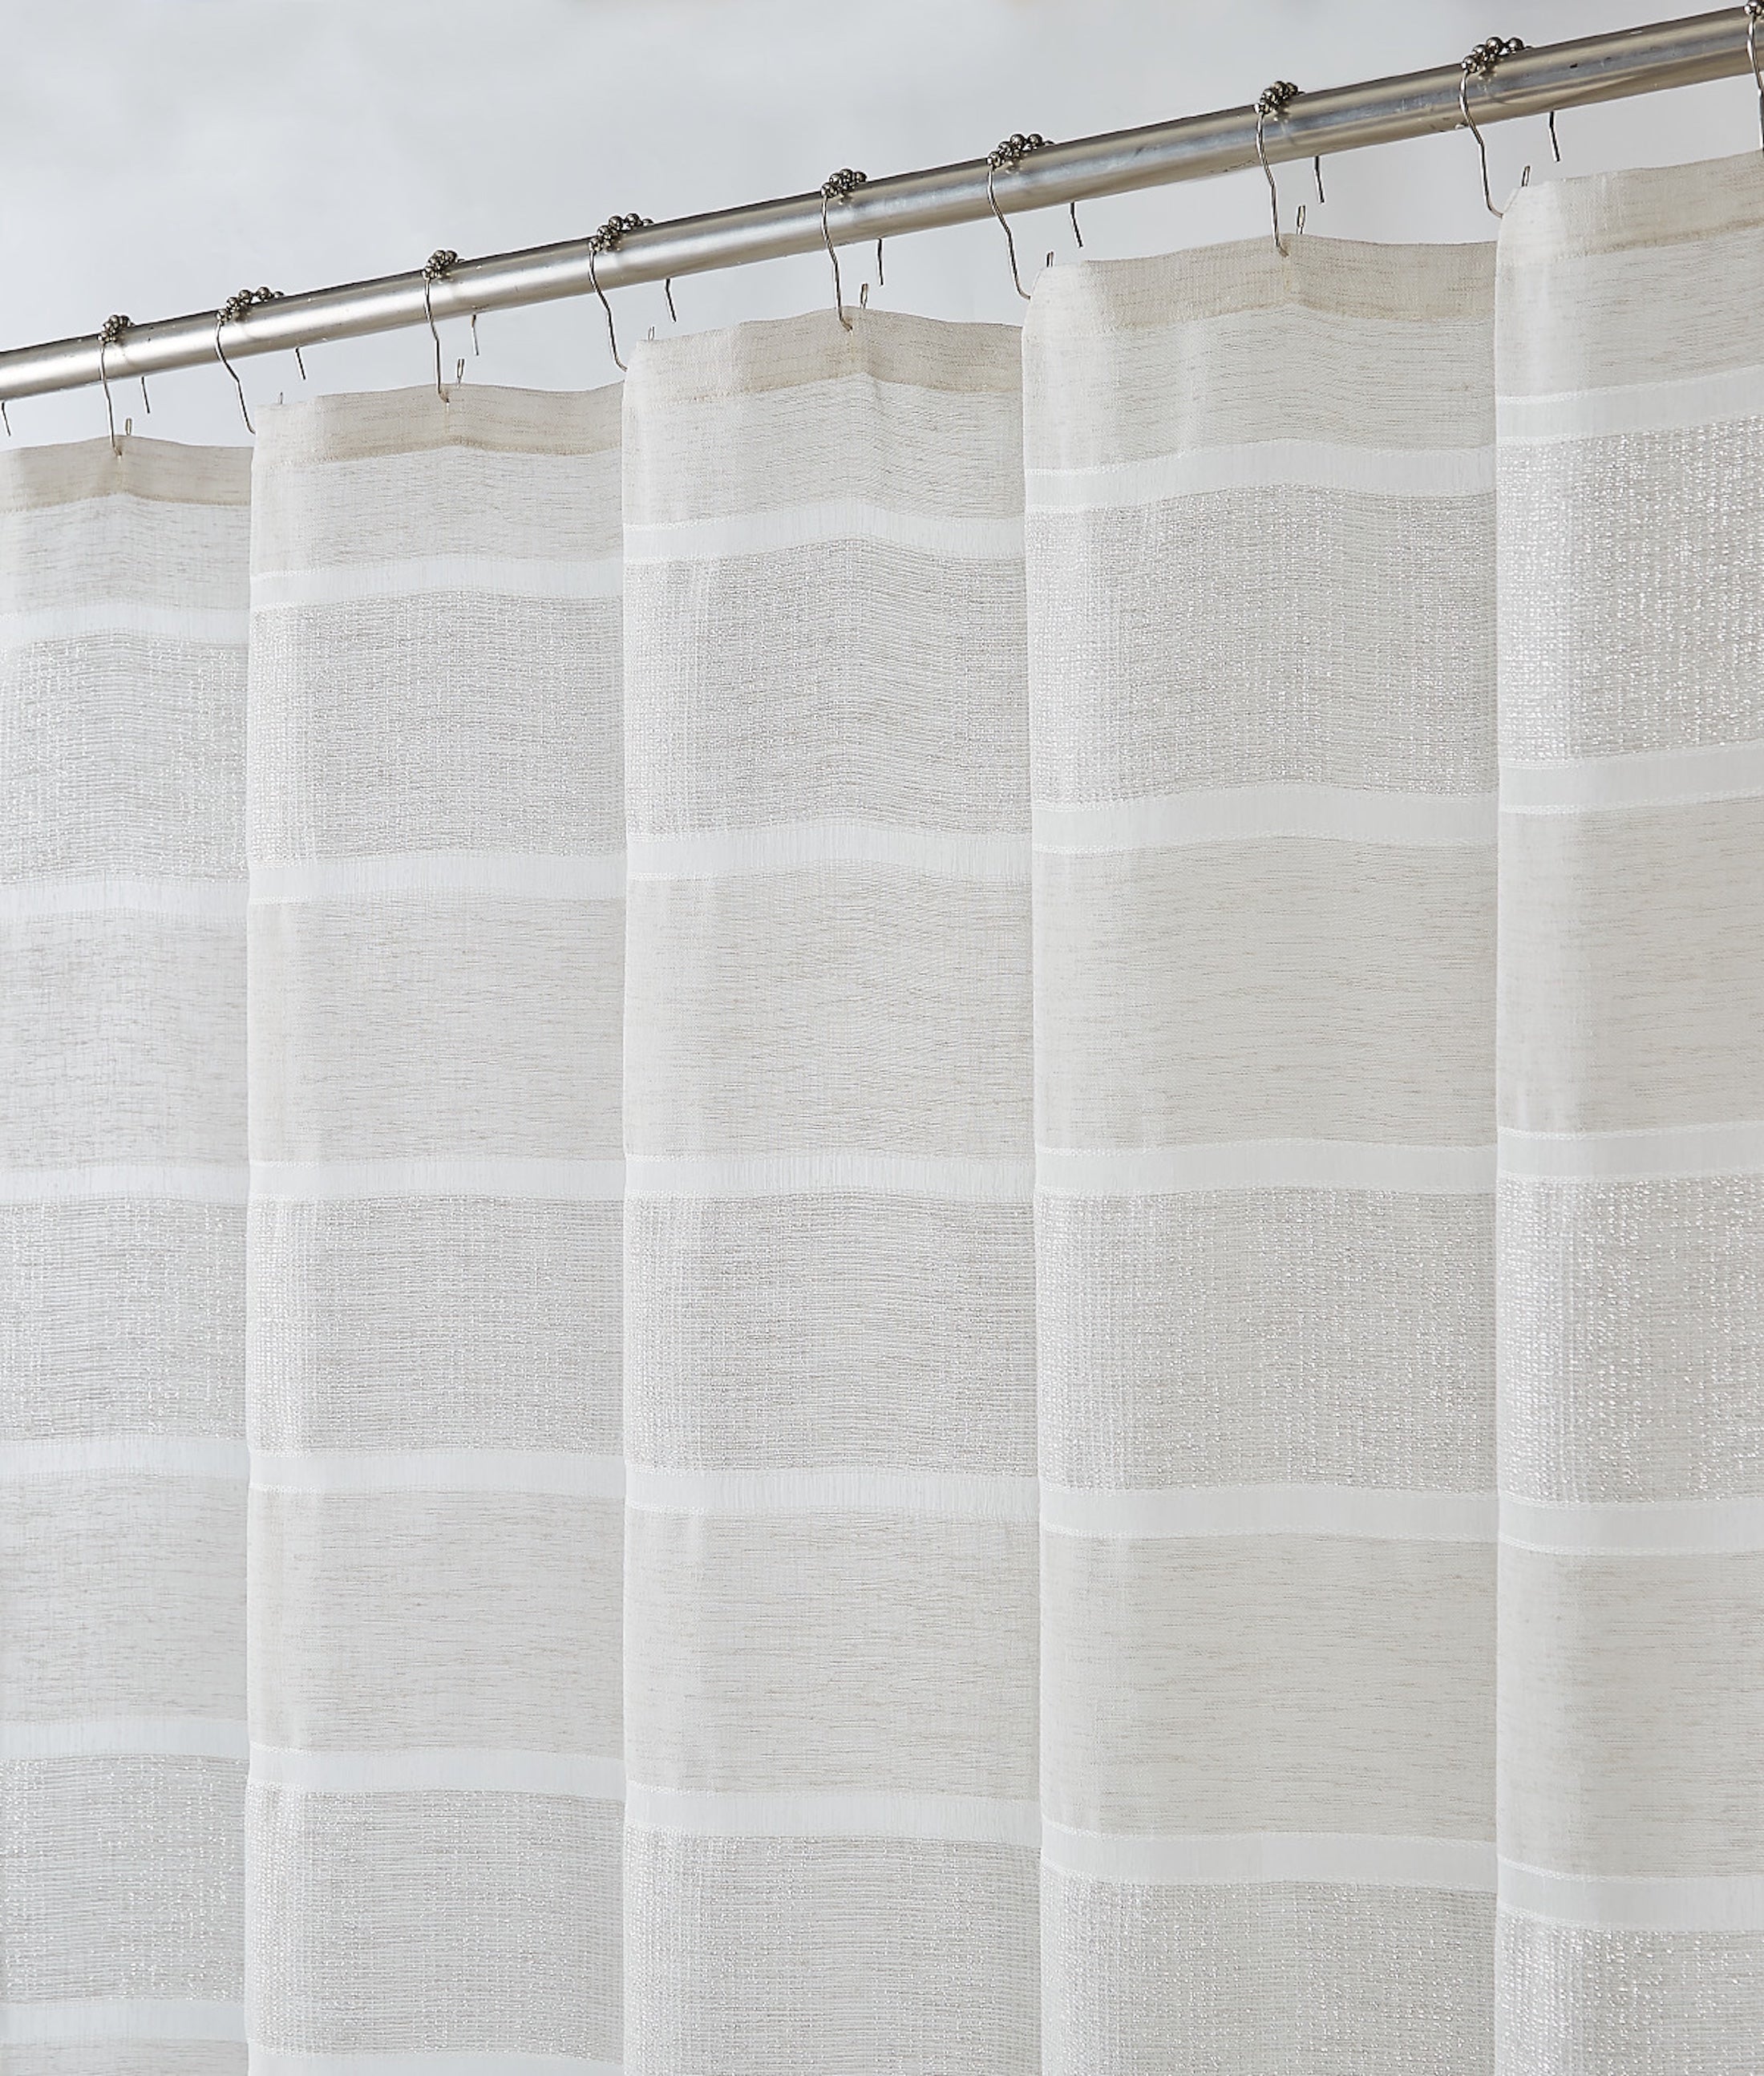 Dainty Home Lurex Stripe 3D Lurex Embedded Textured Striped Linen Look Shower Curtain With Lurex Stripes